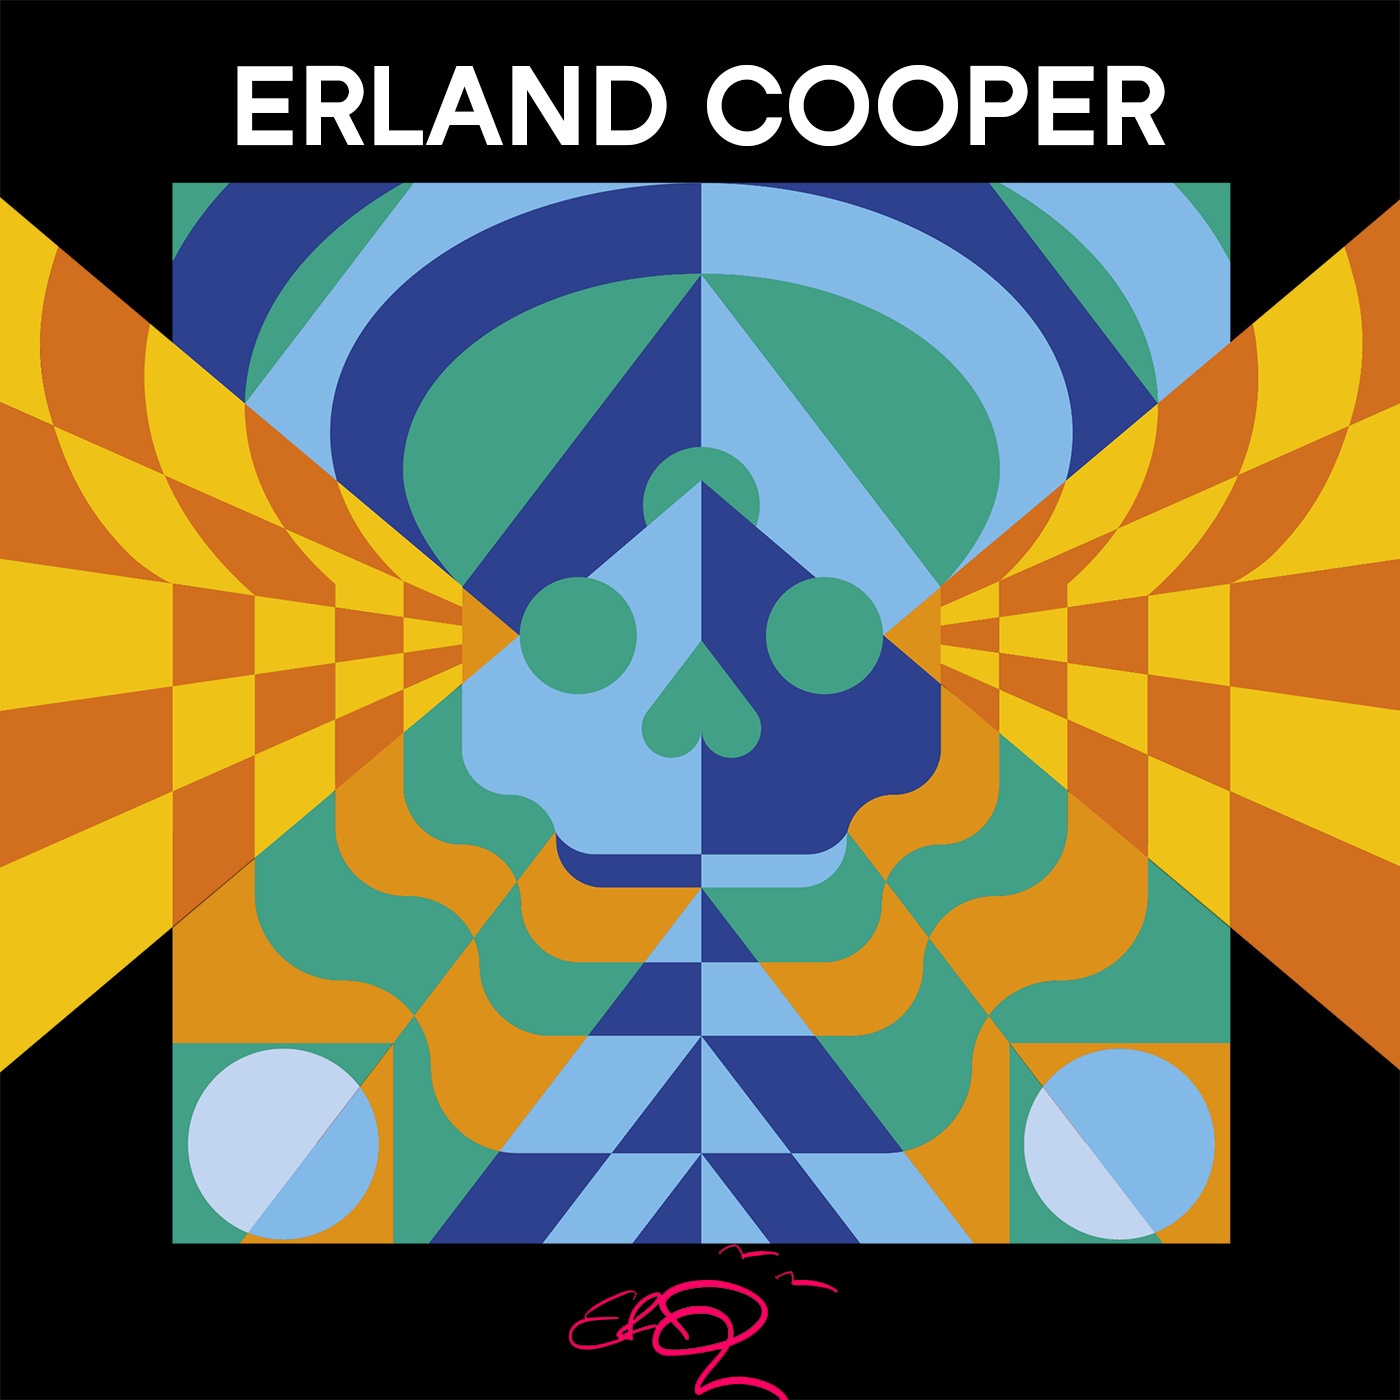 Erland Cooper über Inseln, Natur und Tapes